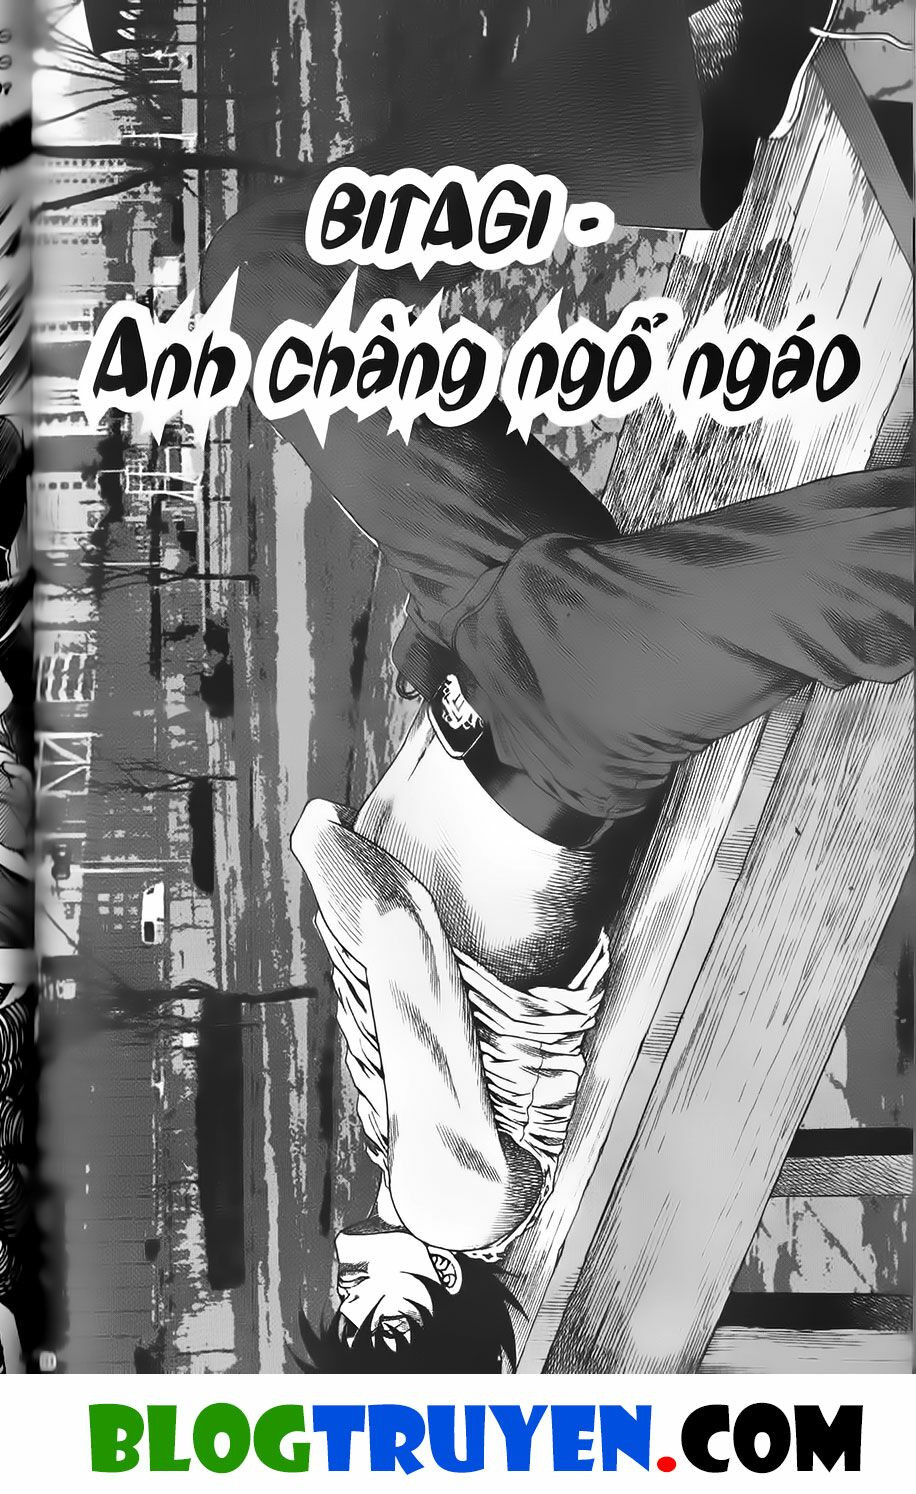 Bitagi - Anh Chàng Ngổ Ngáo: Chapter 418